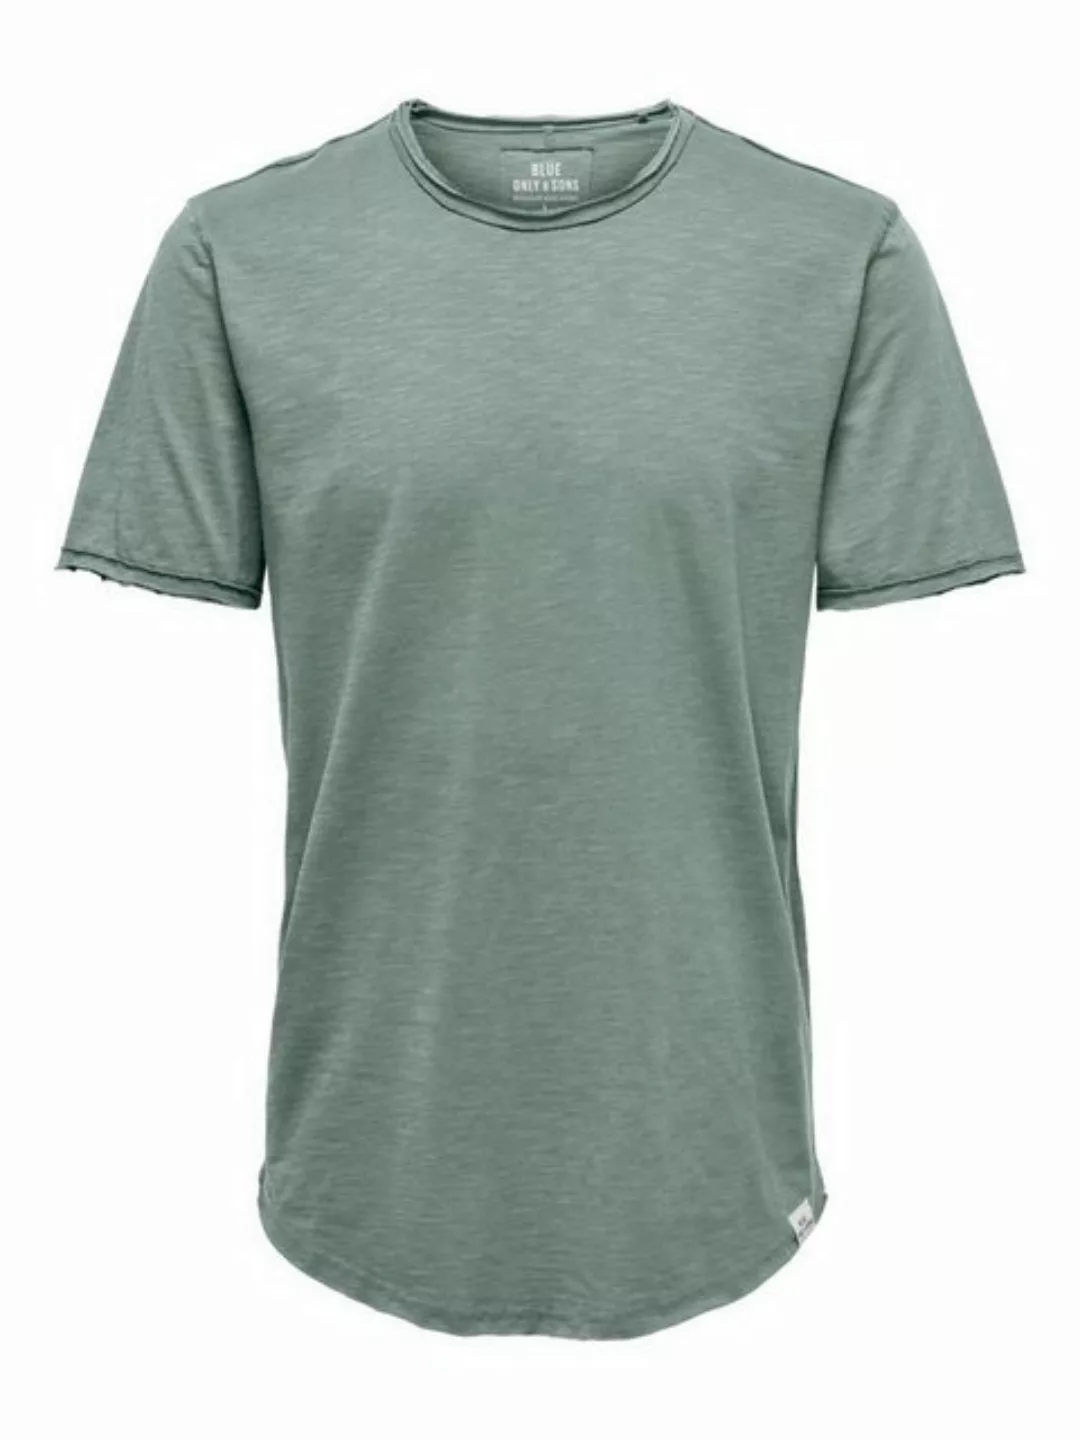 ONLY & SONS T-Shirt Langes Rundhals T-Shirt Einfarbiges Kurzarm Basic Shirt günstig online kaufen